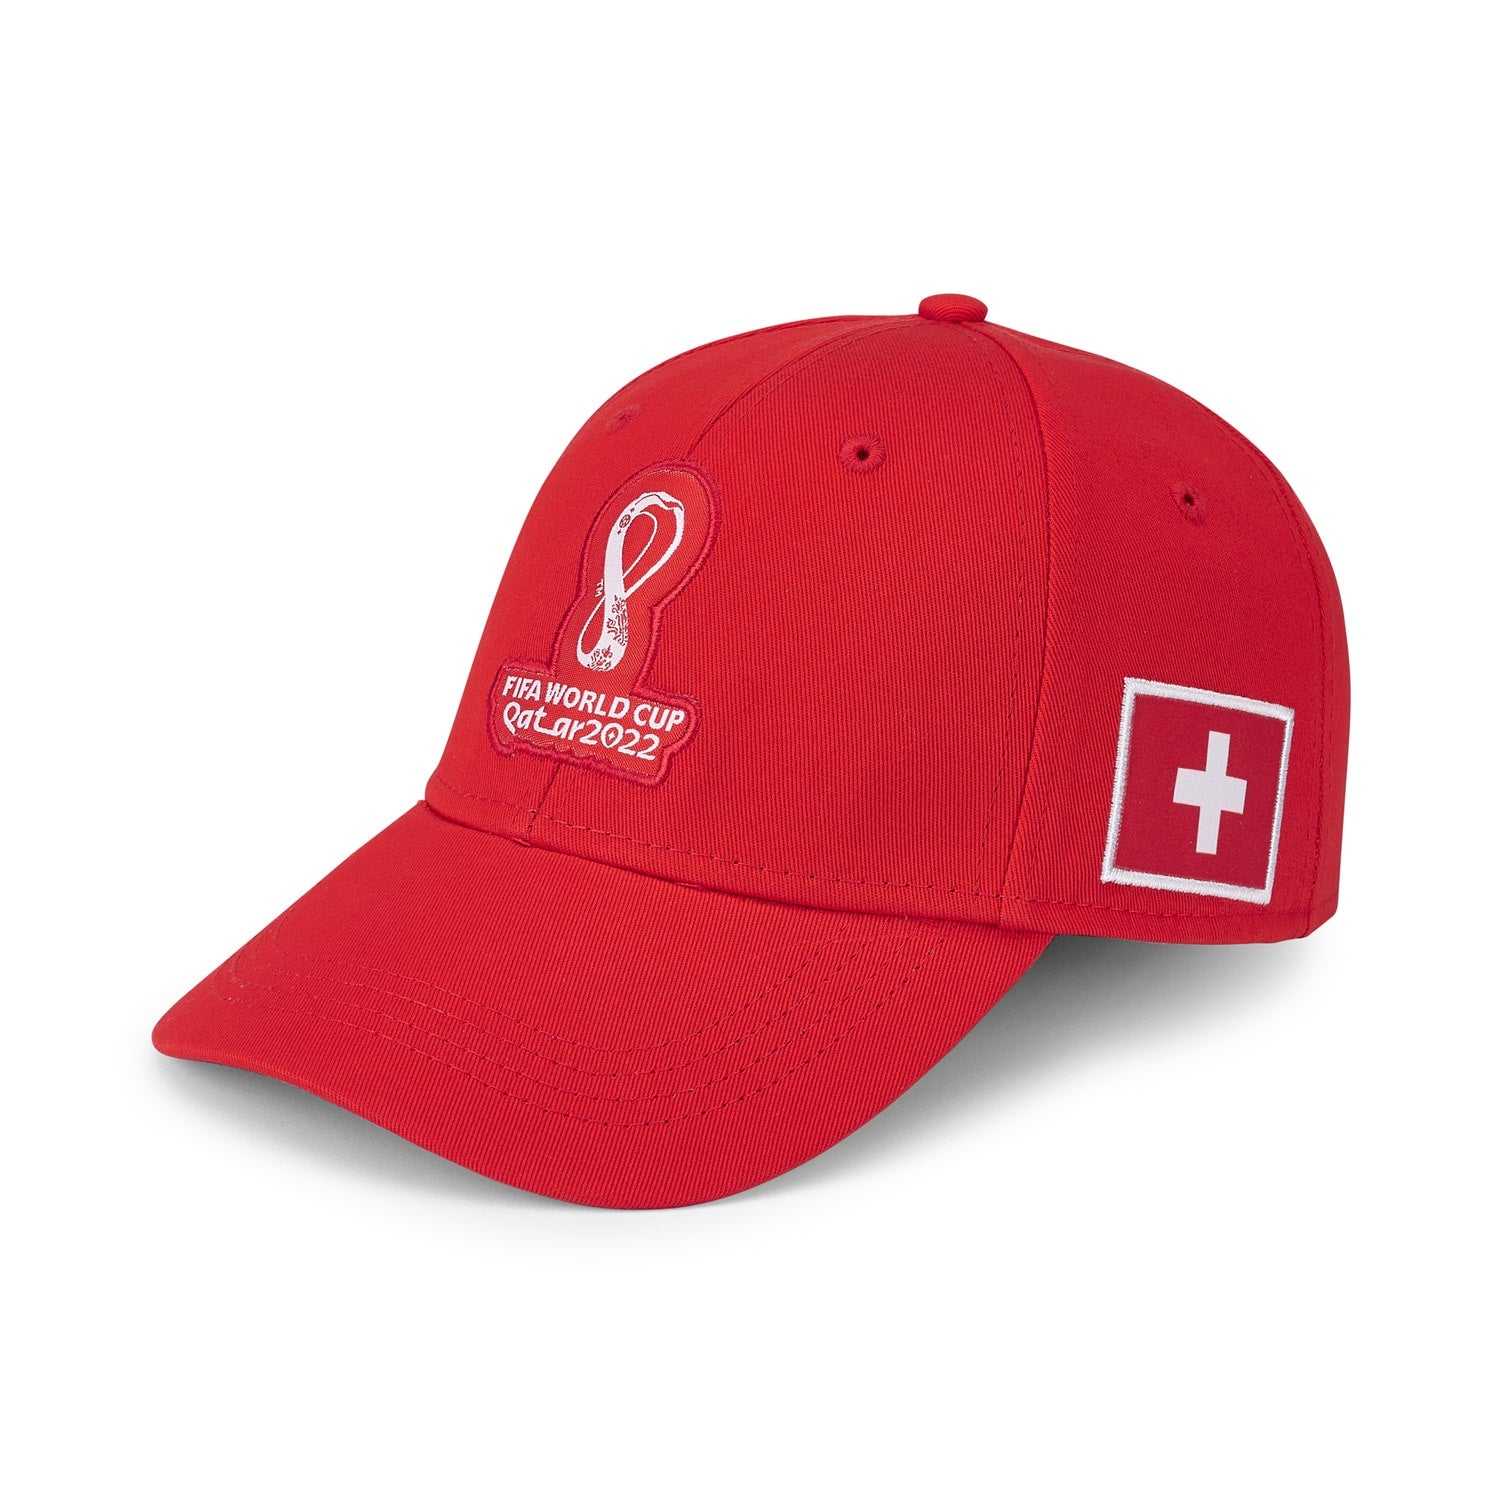 2022 World Cup Switzerland Red Cap - Men's